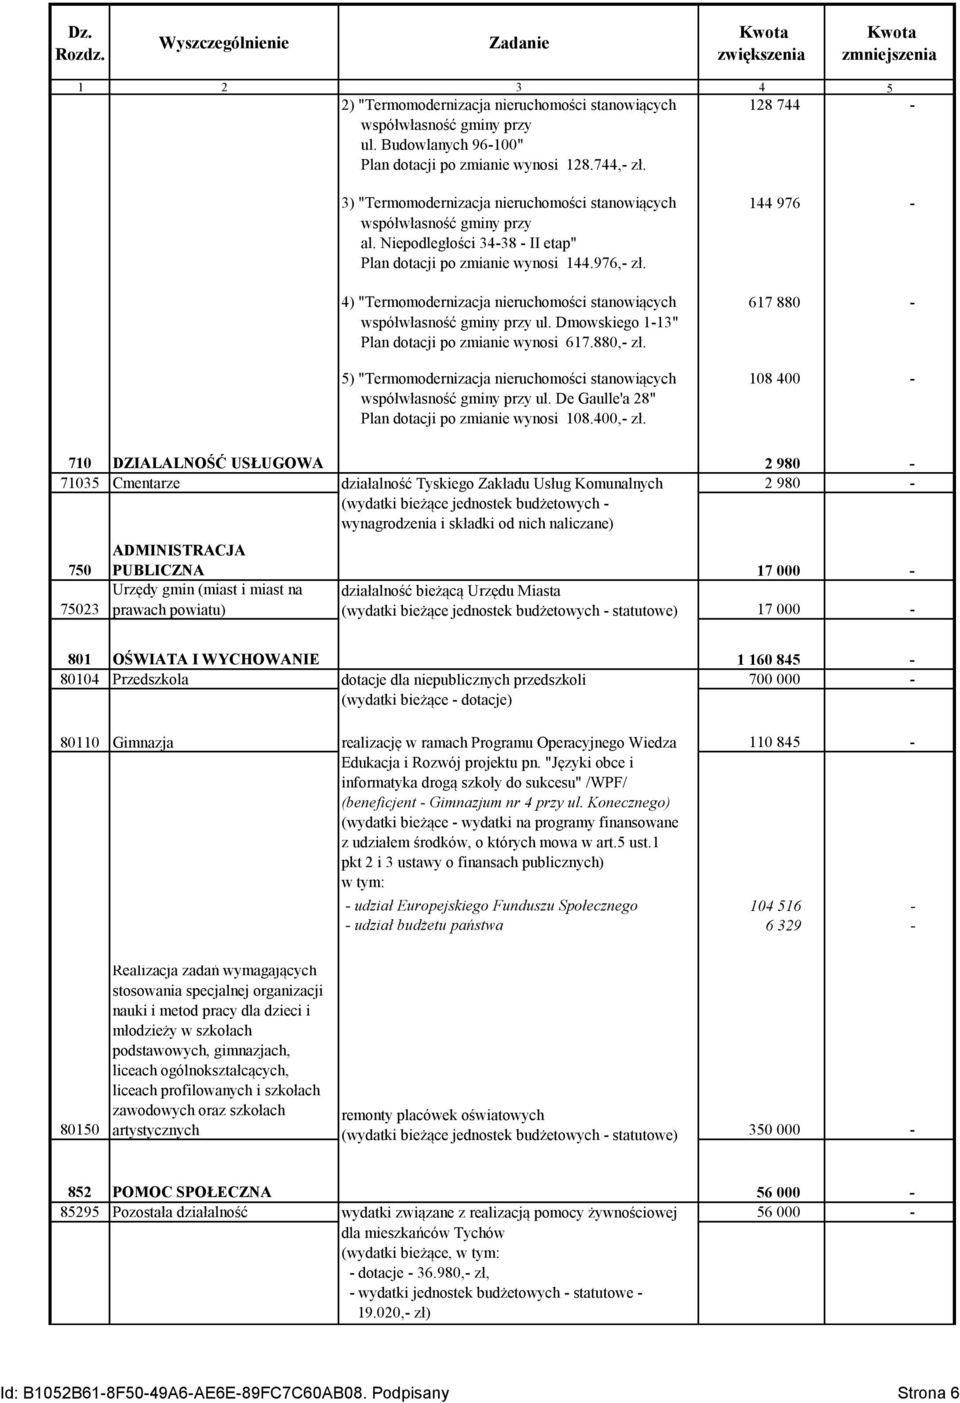 4) "Termomodernizacja nieruchomości stanowiących współwłasność gminy przy ul. Dmowskiego 1-13" Plan dotacji po zmianie wynosi 617.880,- zł.